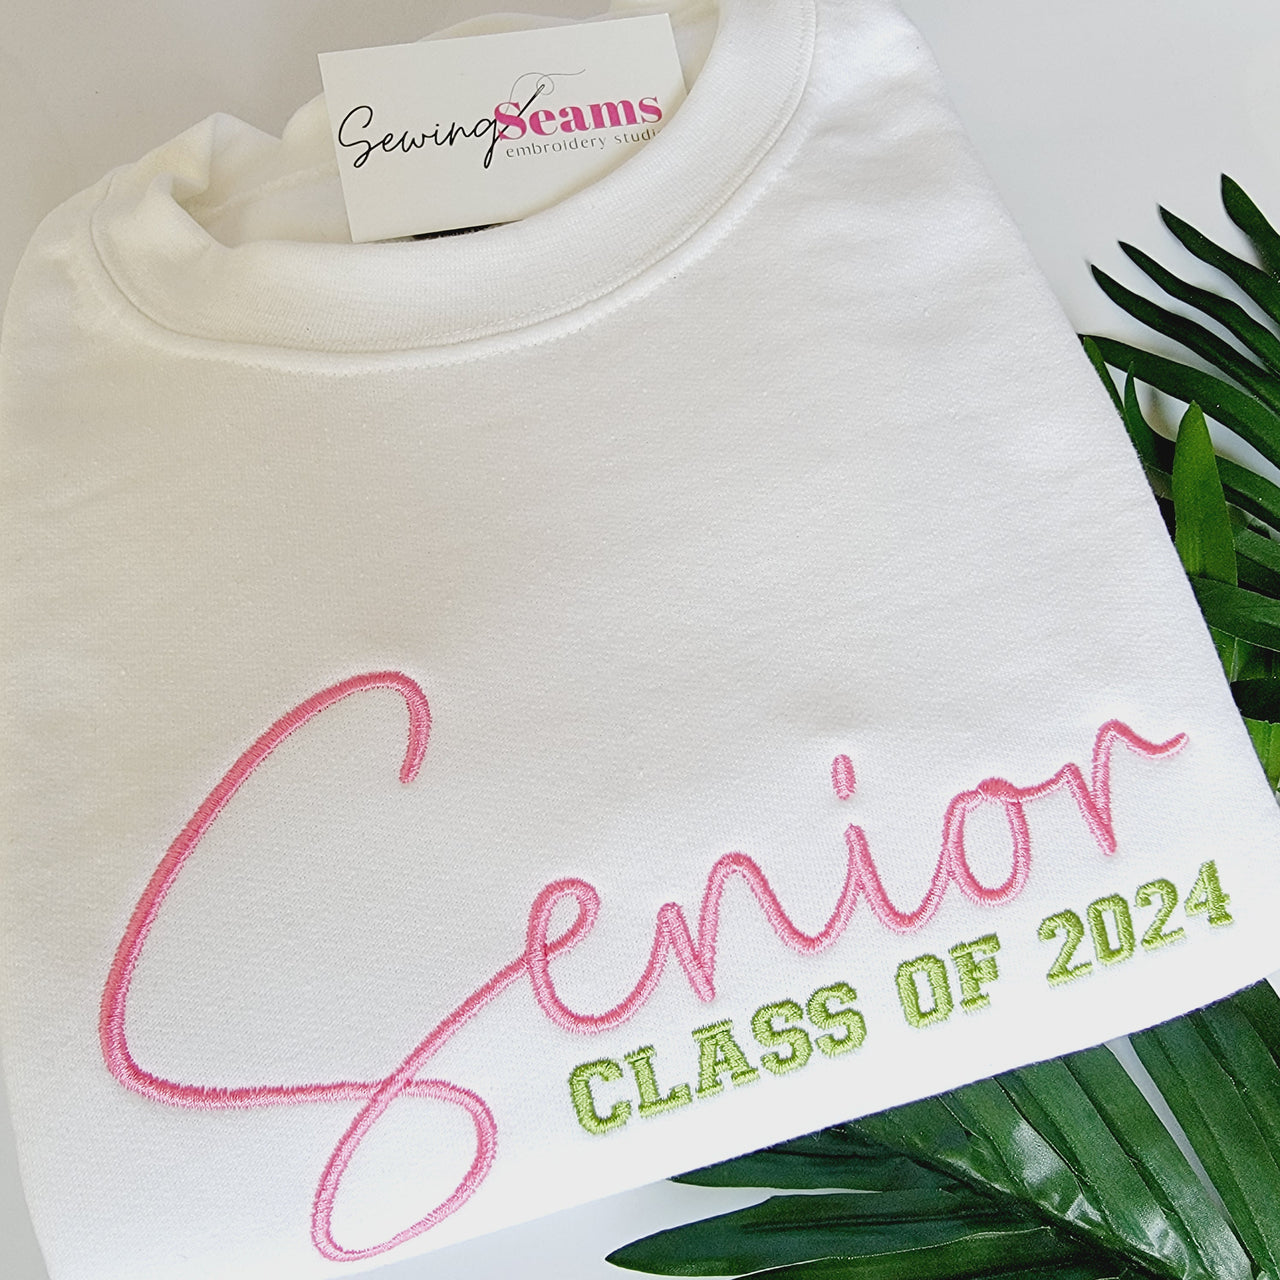 Senior 2024 Shirt